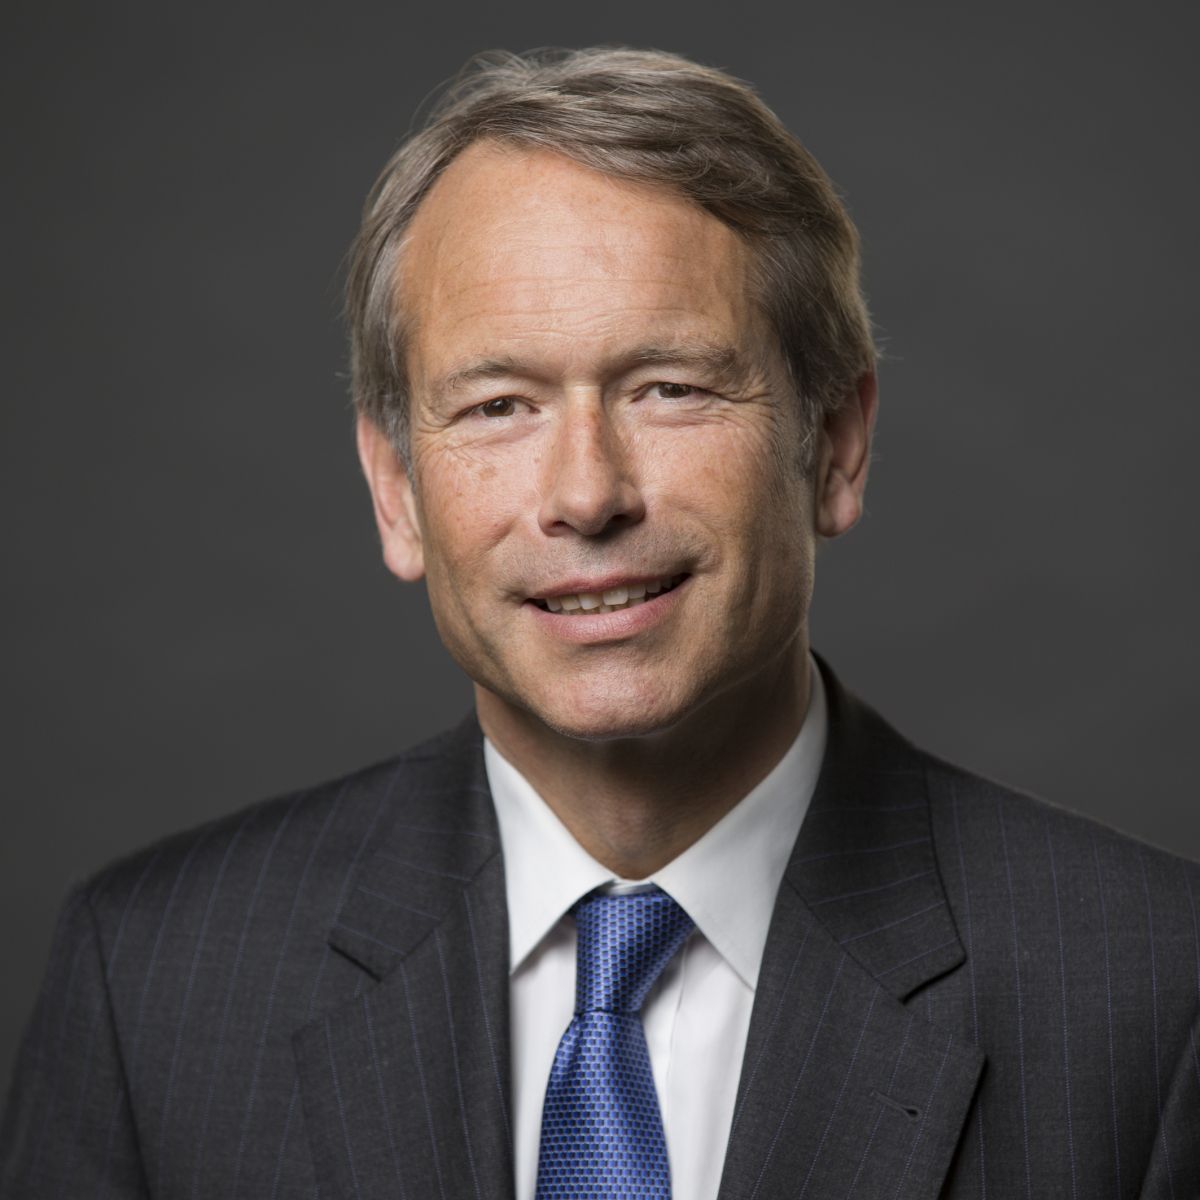 Dr. Ulrich Nußbaum